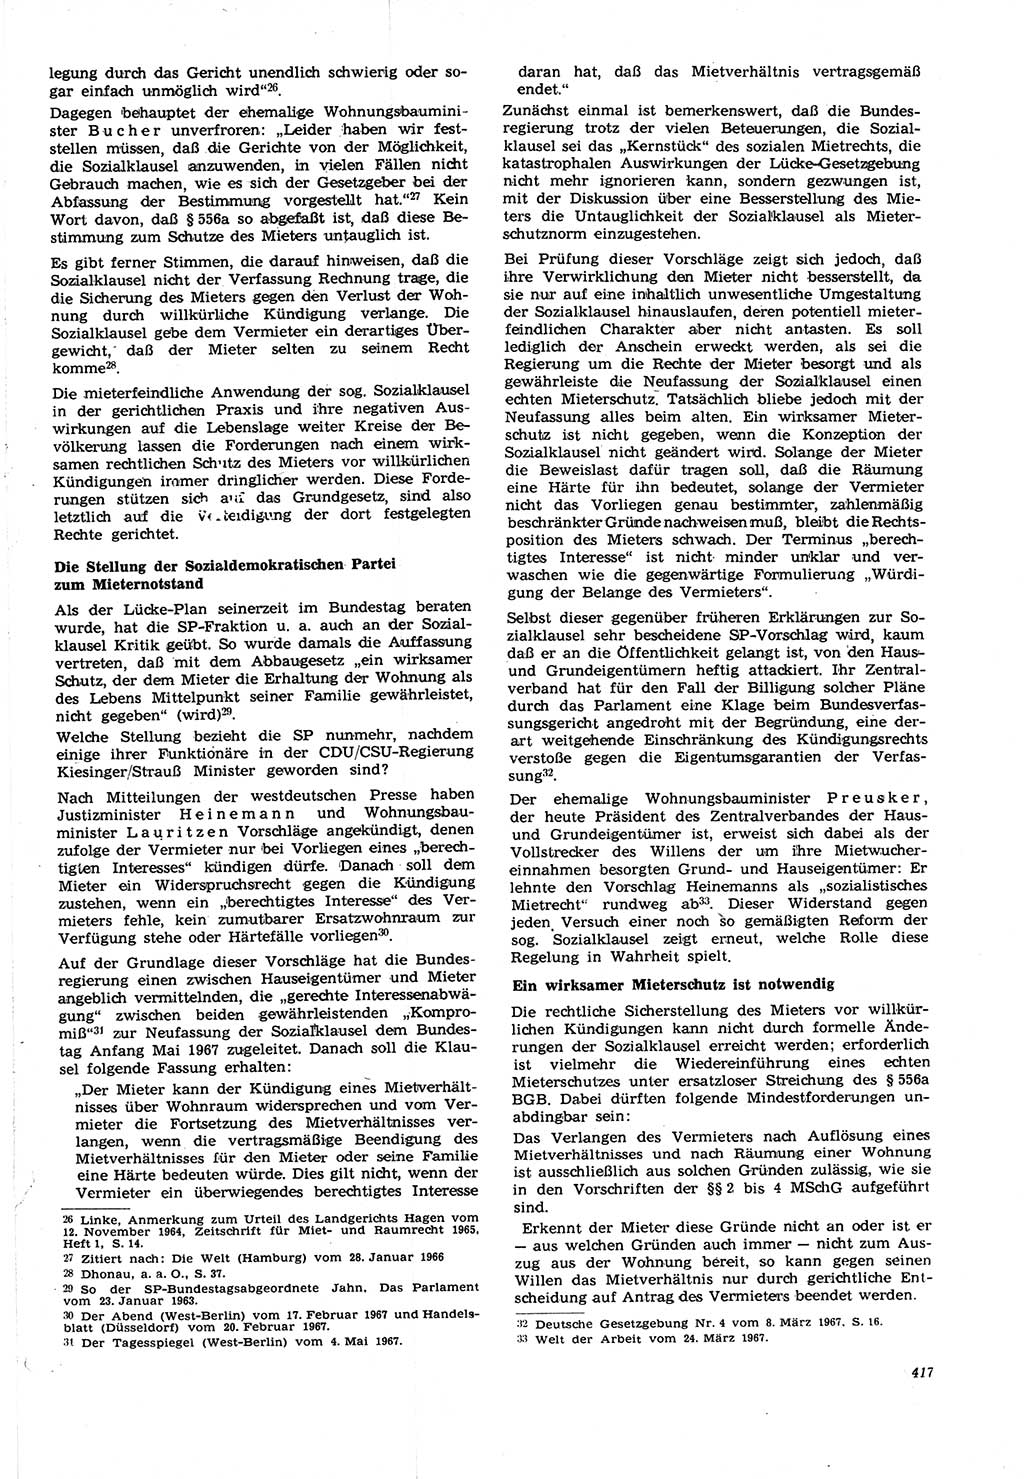 Neue Justiz (NJ), Zeitschrift für Recht und Rechtswissenschaft [Deutsche Demokratische Republik (DDR)], 21. Jahrgang 1967, Seite 417 (NJ DDR 1967, S. 417)